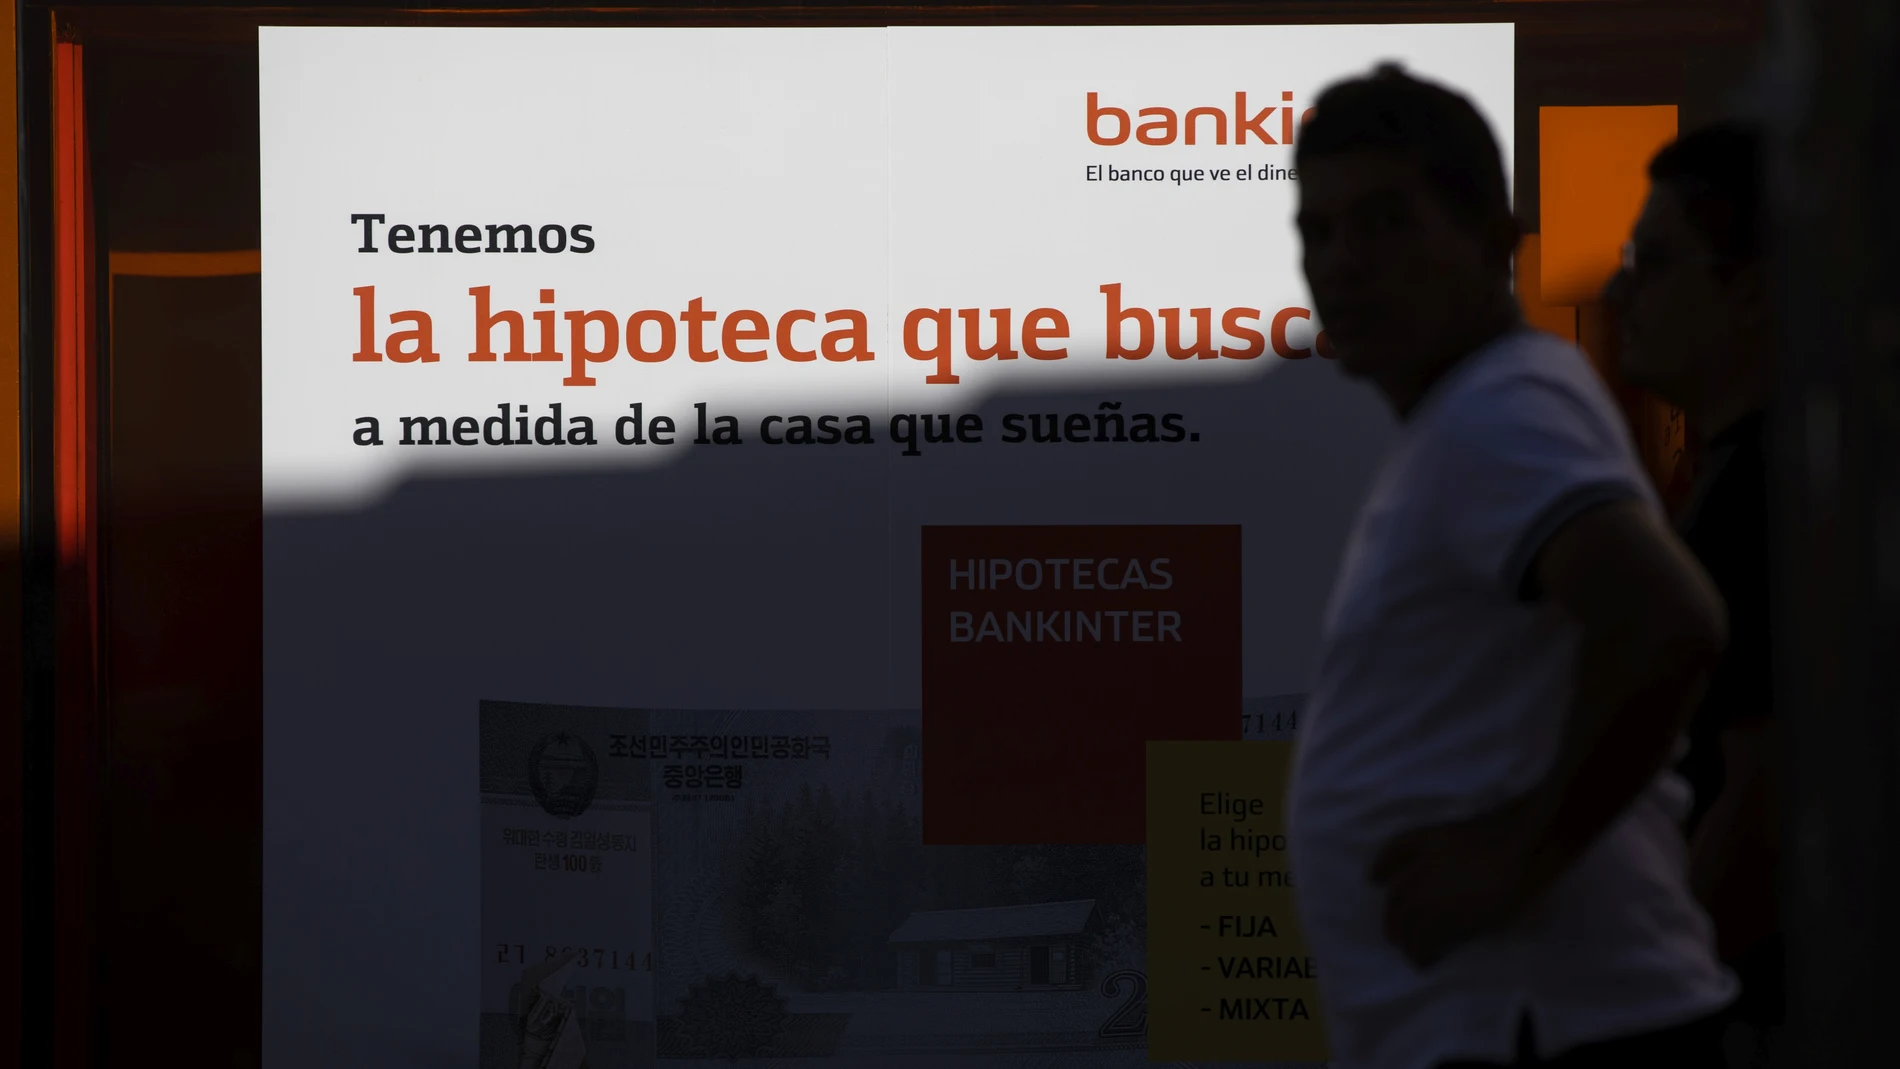 Banco anunciando su oferta en hipotecas.